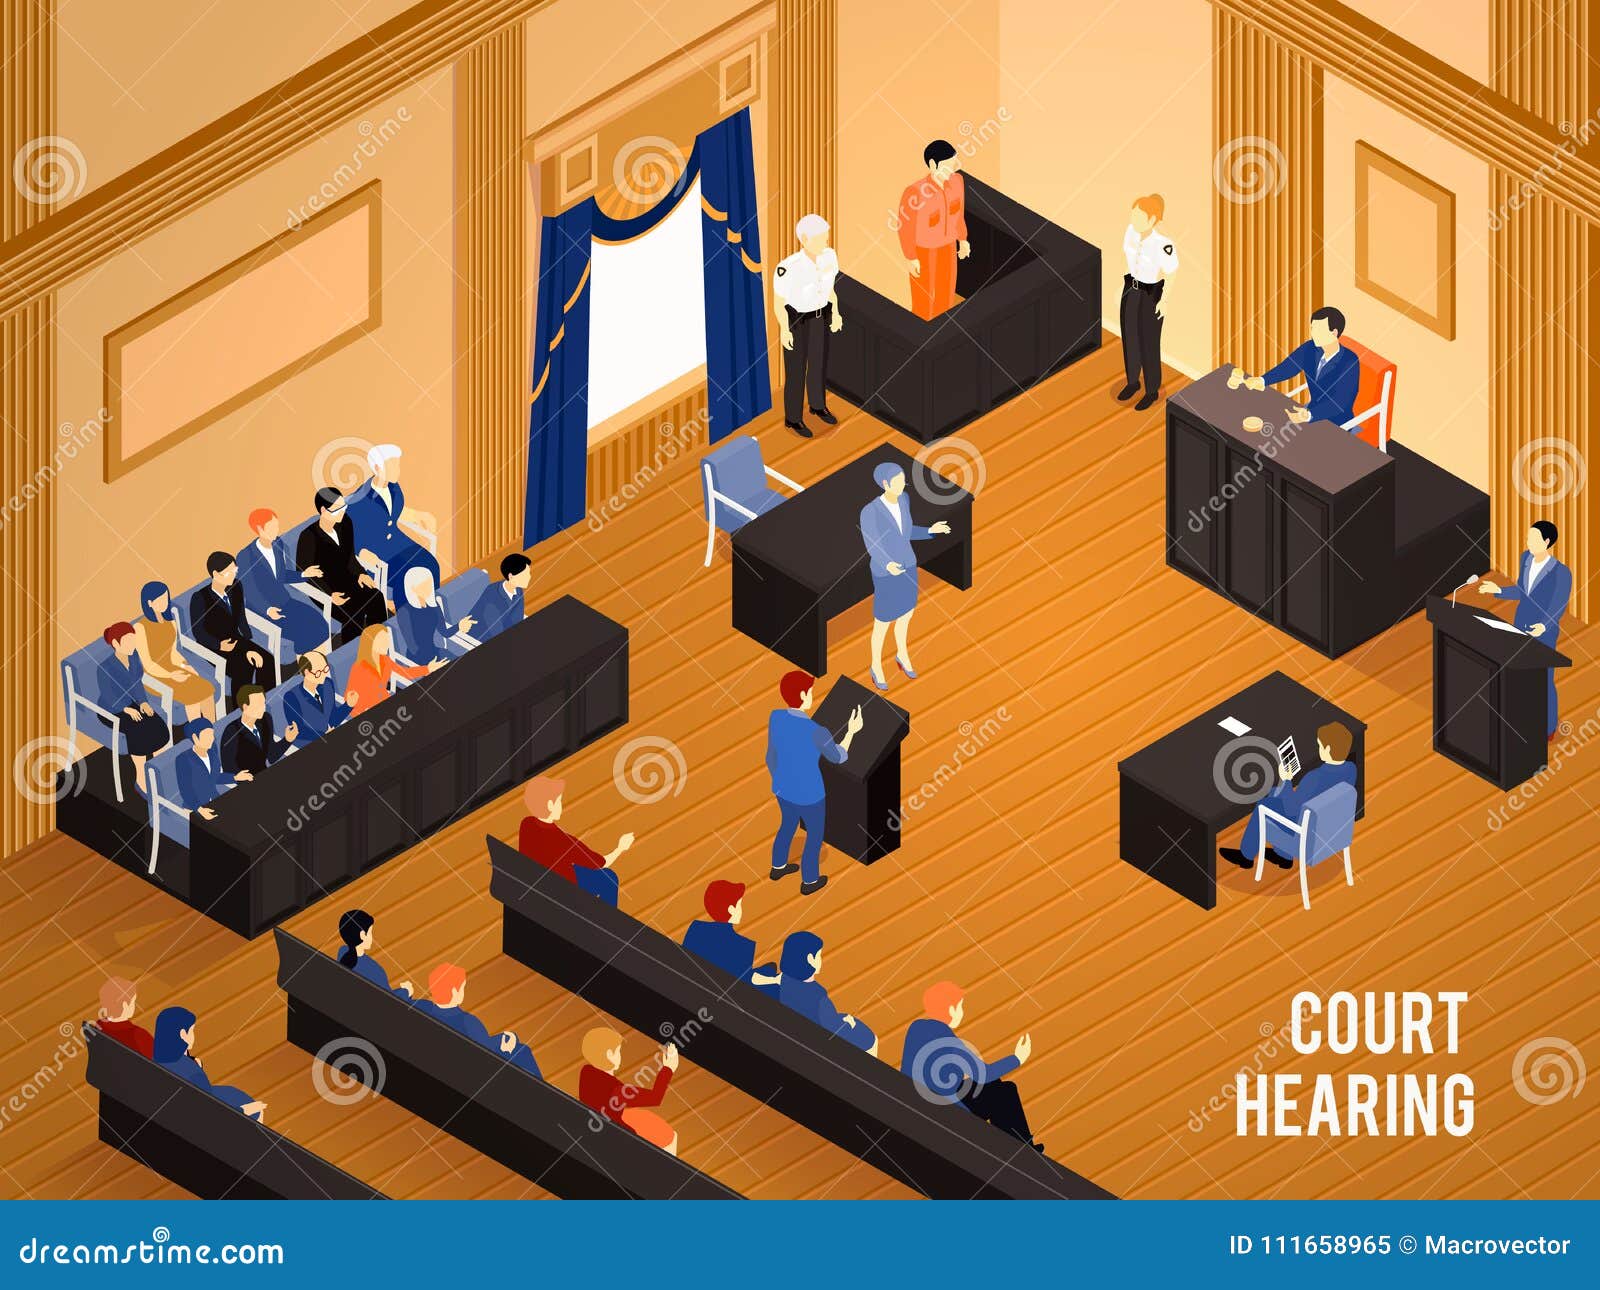 Court hearing. Суд присяжных. Заседание присяжных в суде. Зал присяжных заседателей. Суд присяжных иллюстрация.